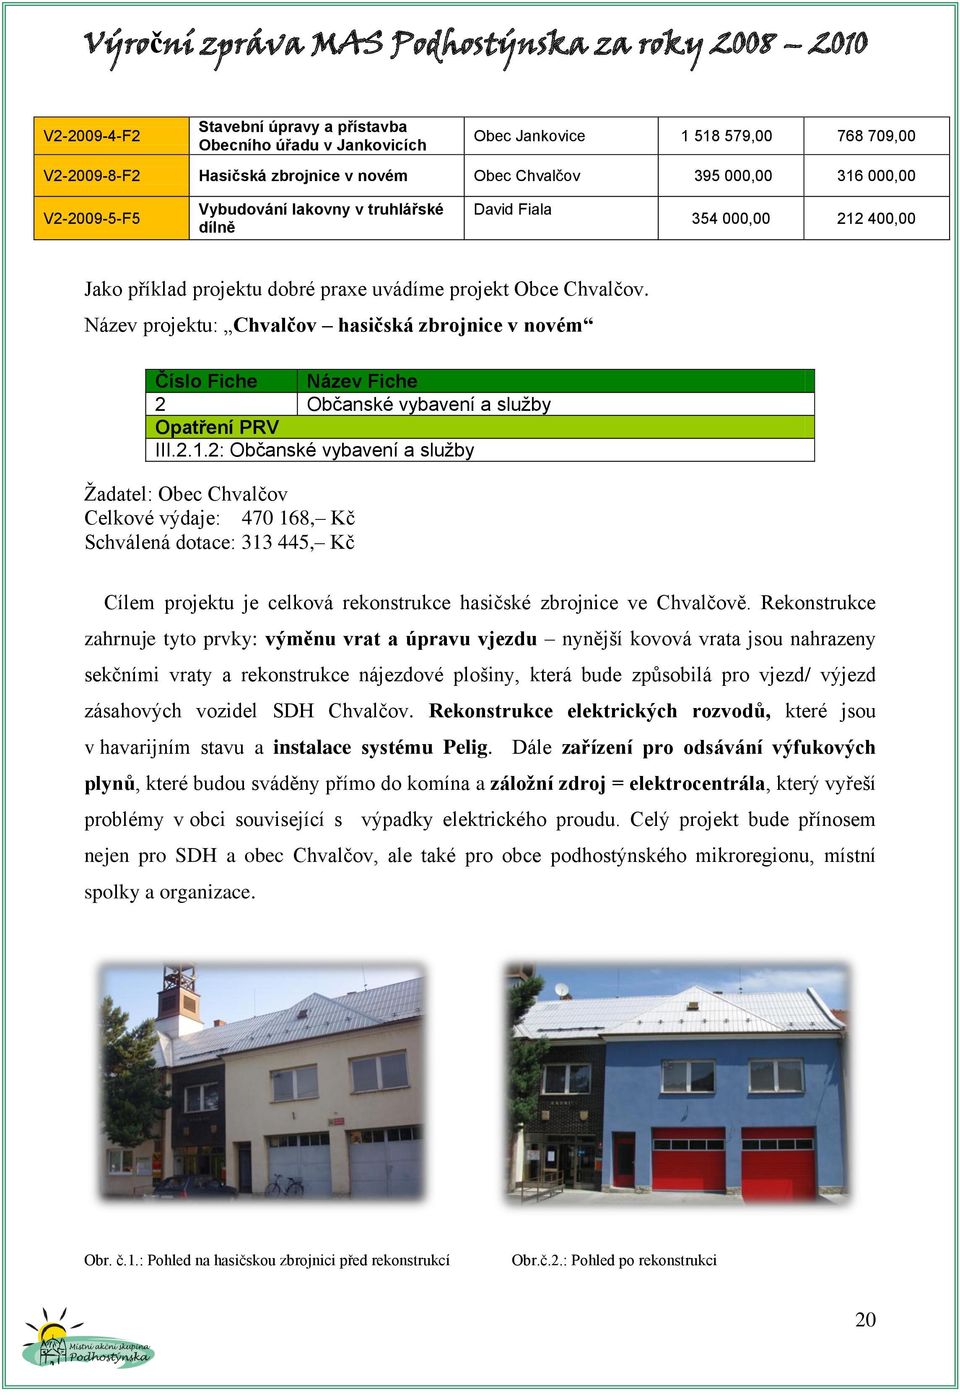 Název projektu: Chvalčov hasičská zbrojnice v novém Číslo Fiche Název Fiche 2 Občanské vybavení a služby Opatření PRV III.2.1.